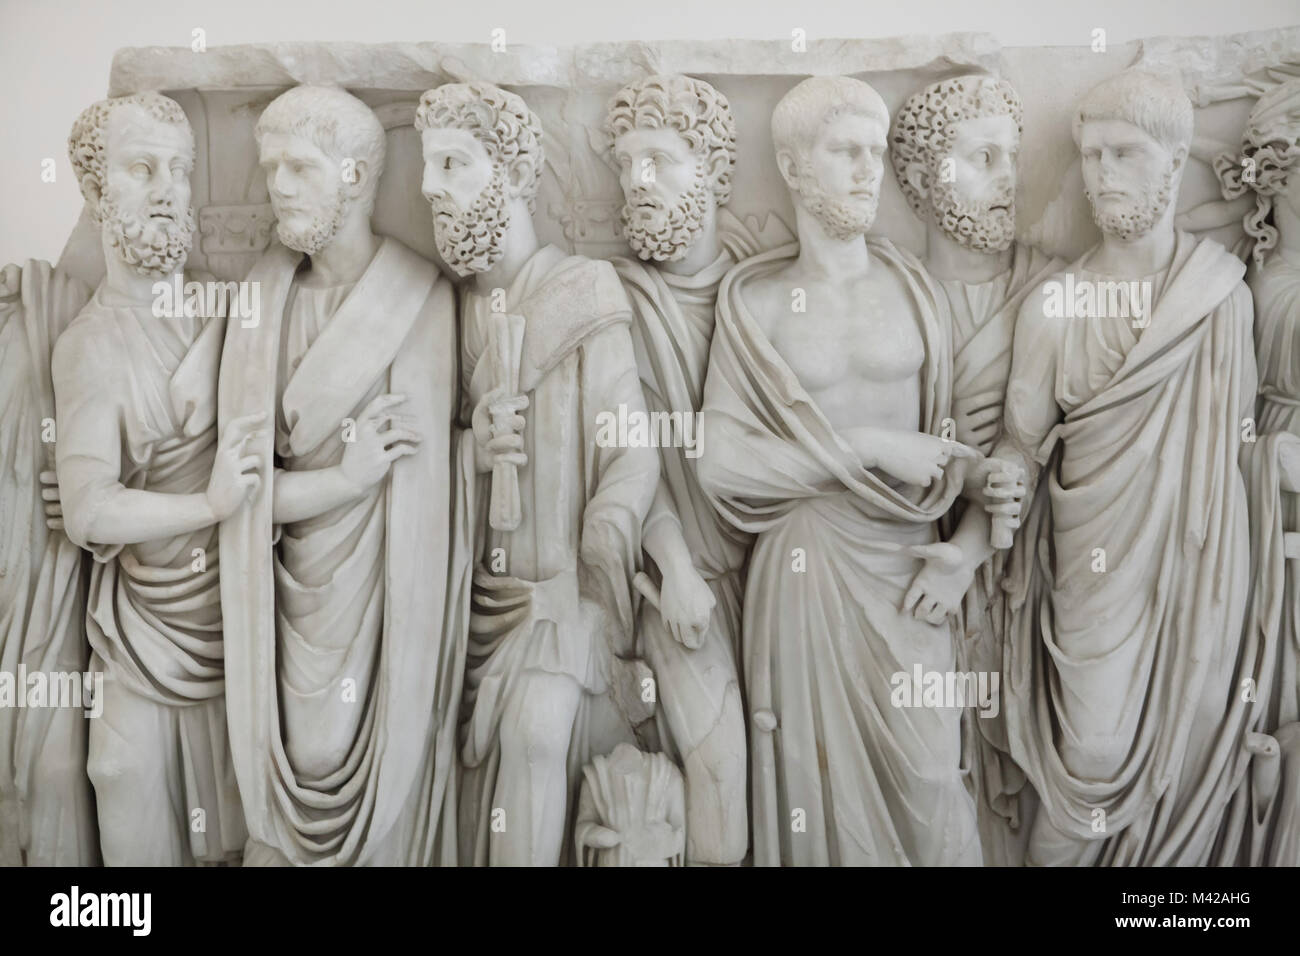 Sarkophag mit Togate Männer, wie der Sarkophag der Brüder bekannt. Römischen Sarkophag aus der Mitte des 3. Jahrhunderts aus der Sammlung Farnese auf Anzeige im Nationalen Archäologischen Museum in Neapel, Kampanien, Italien. Stockfoto